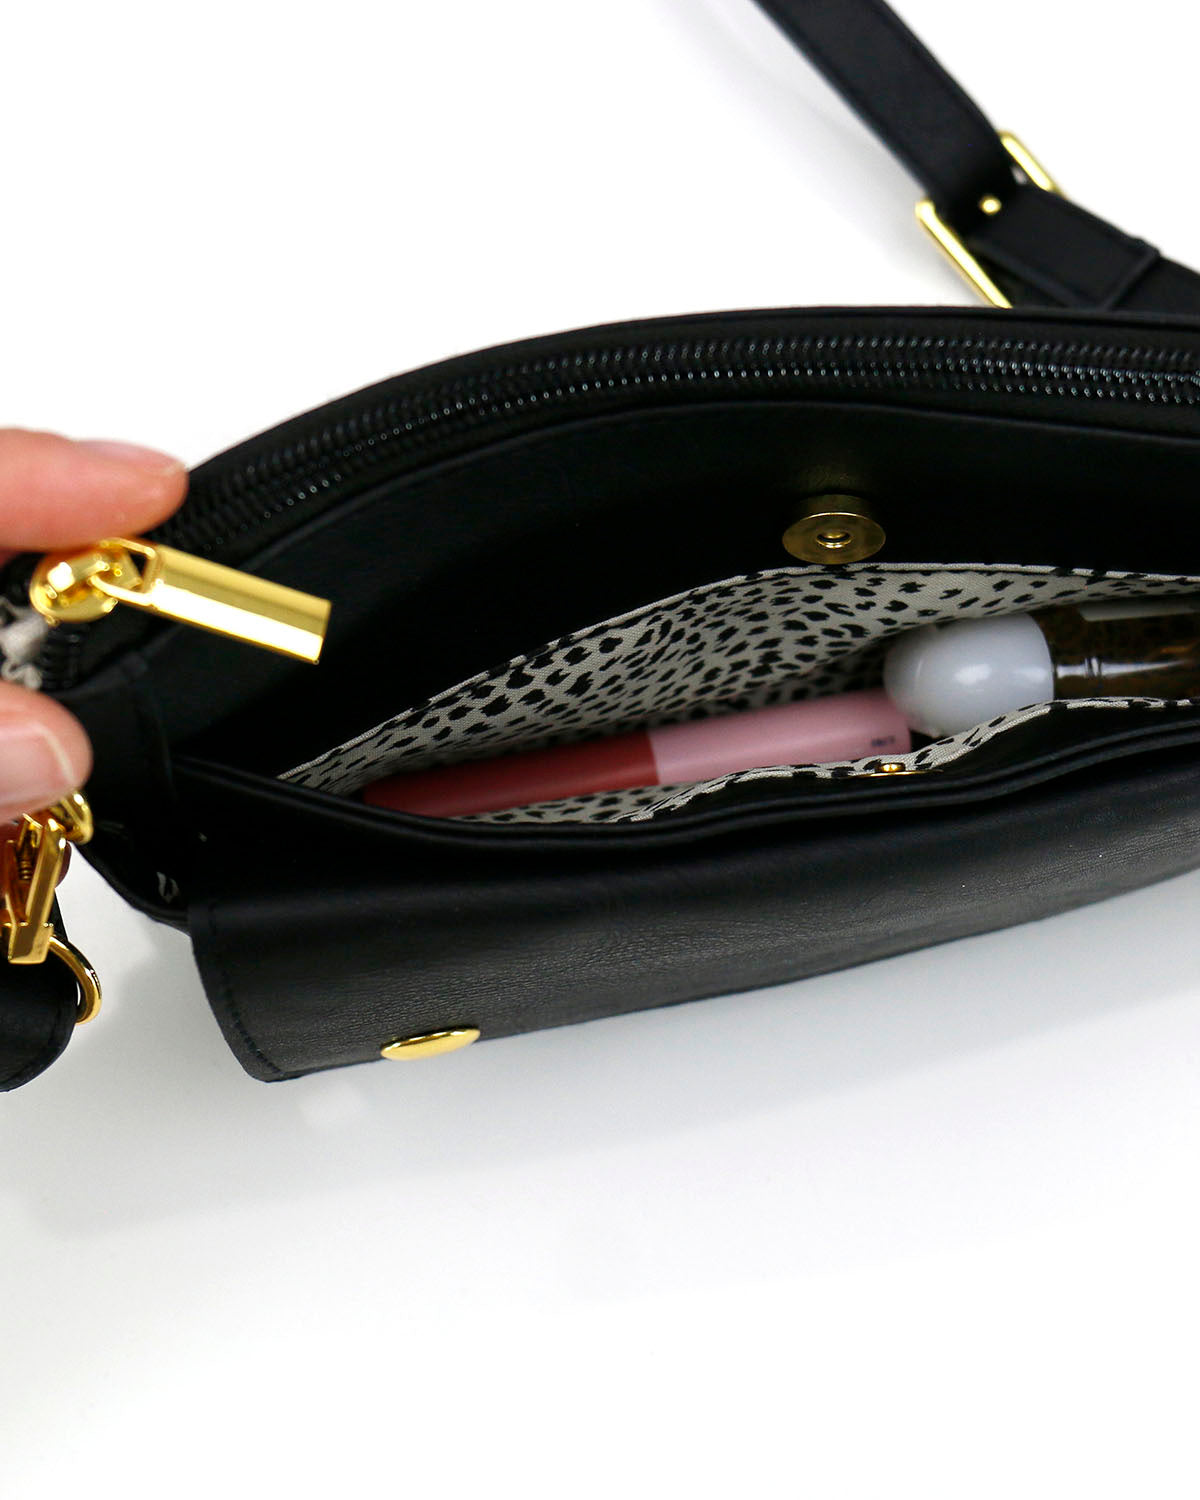 Vegan Leather Essentials Belt Bag in Black